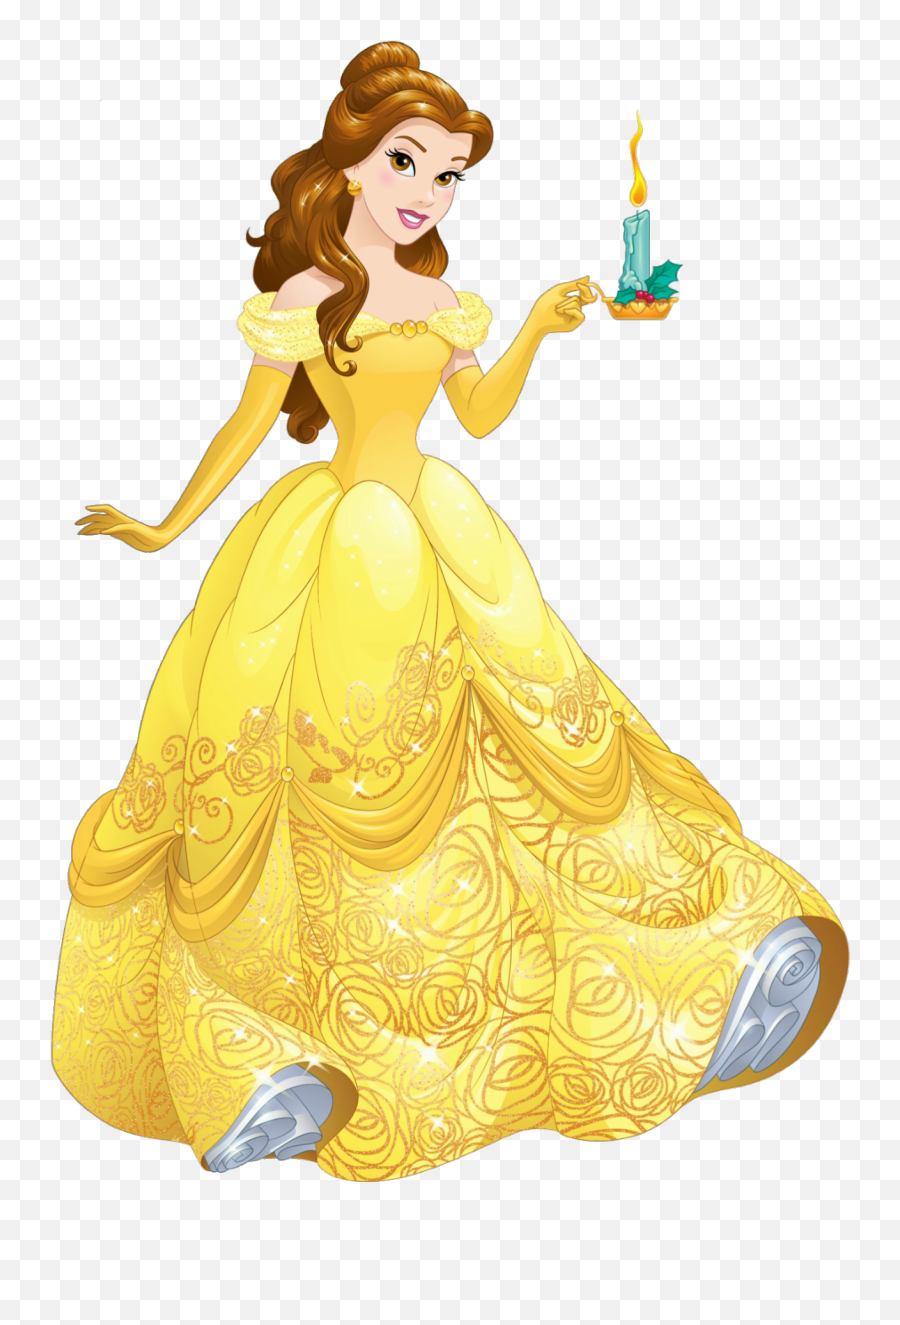 Bnox That Girl Geek Dinner Got Me Thinking - Belle Disney Princess Emoji,Wookie Emoji